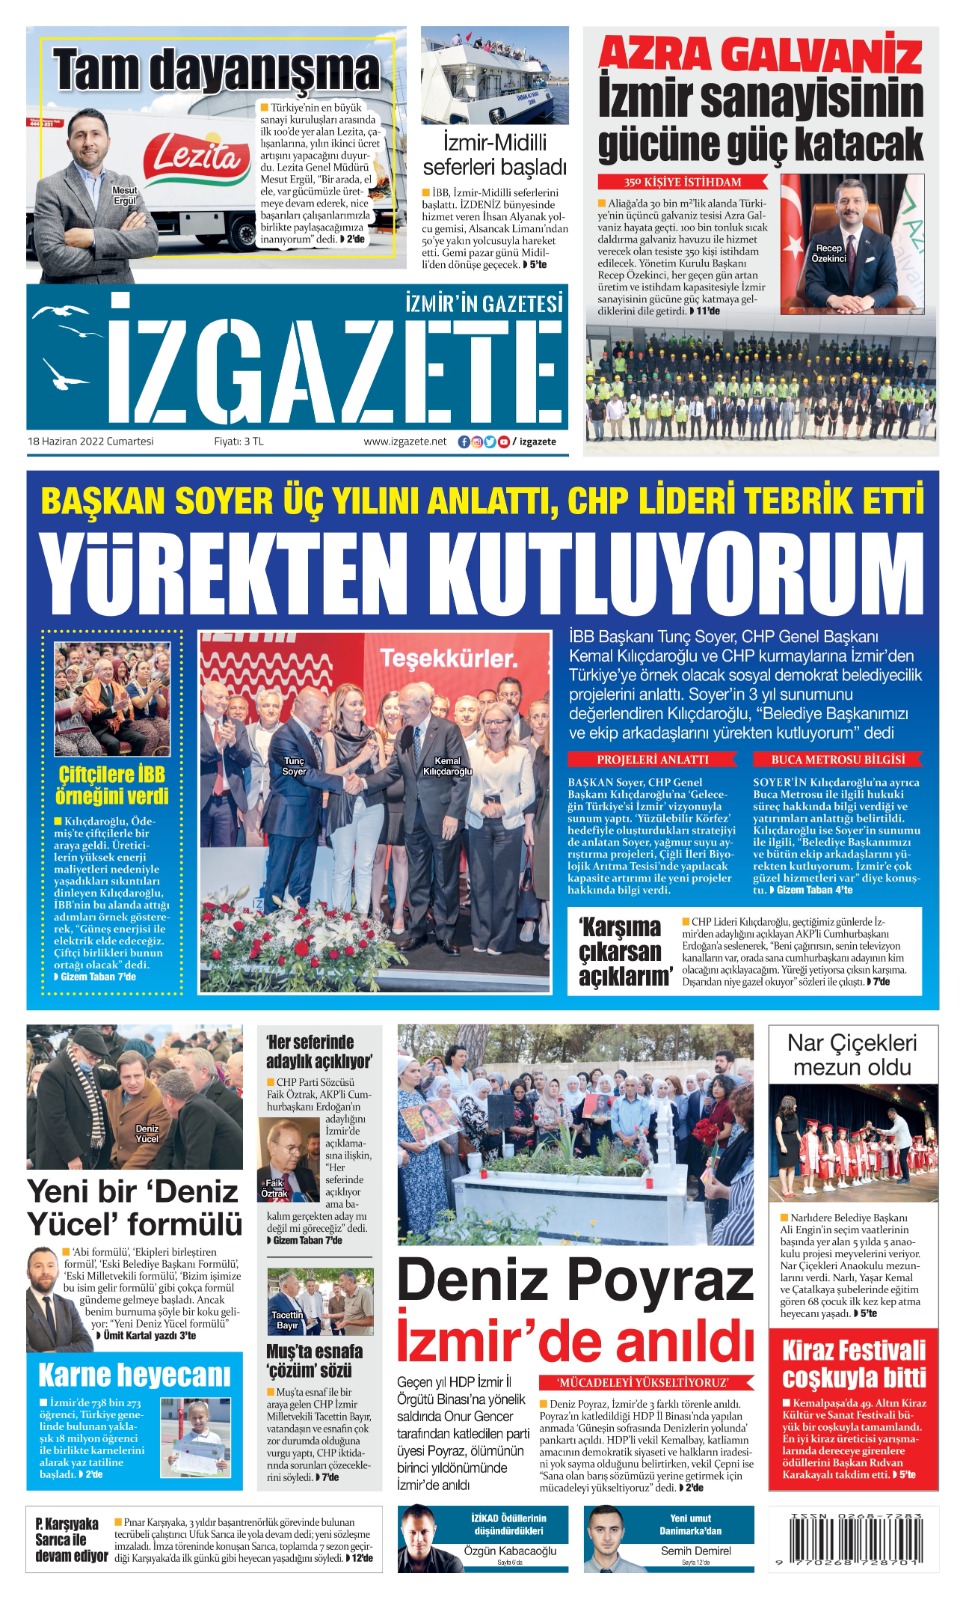 İz Gazete - İzmir'in Gazetesi - 18.06.2022 Manşeti